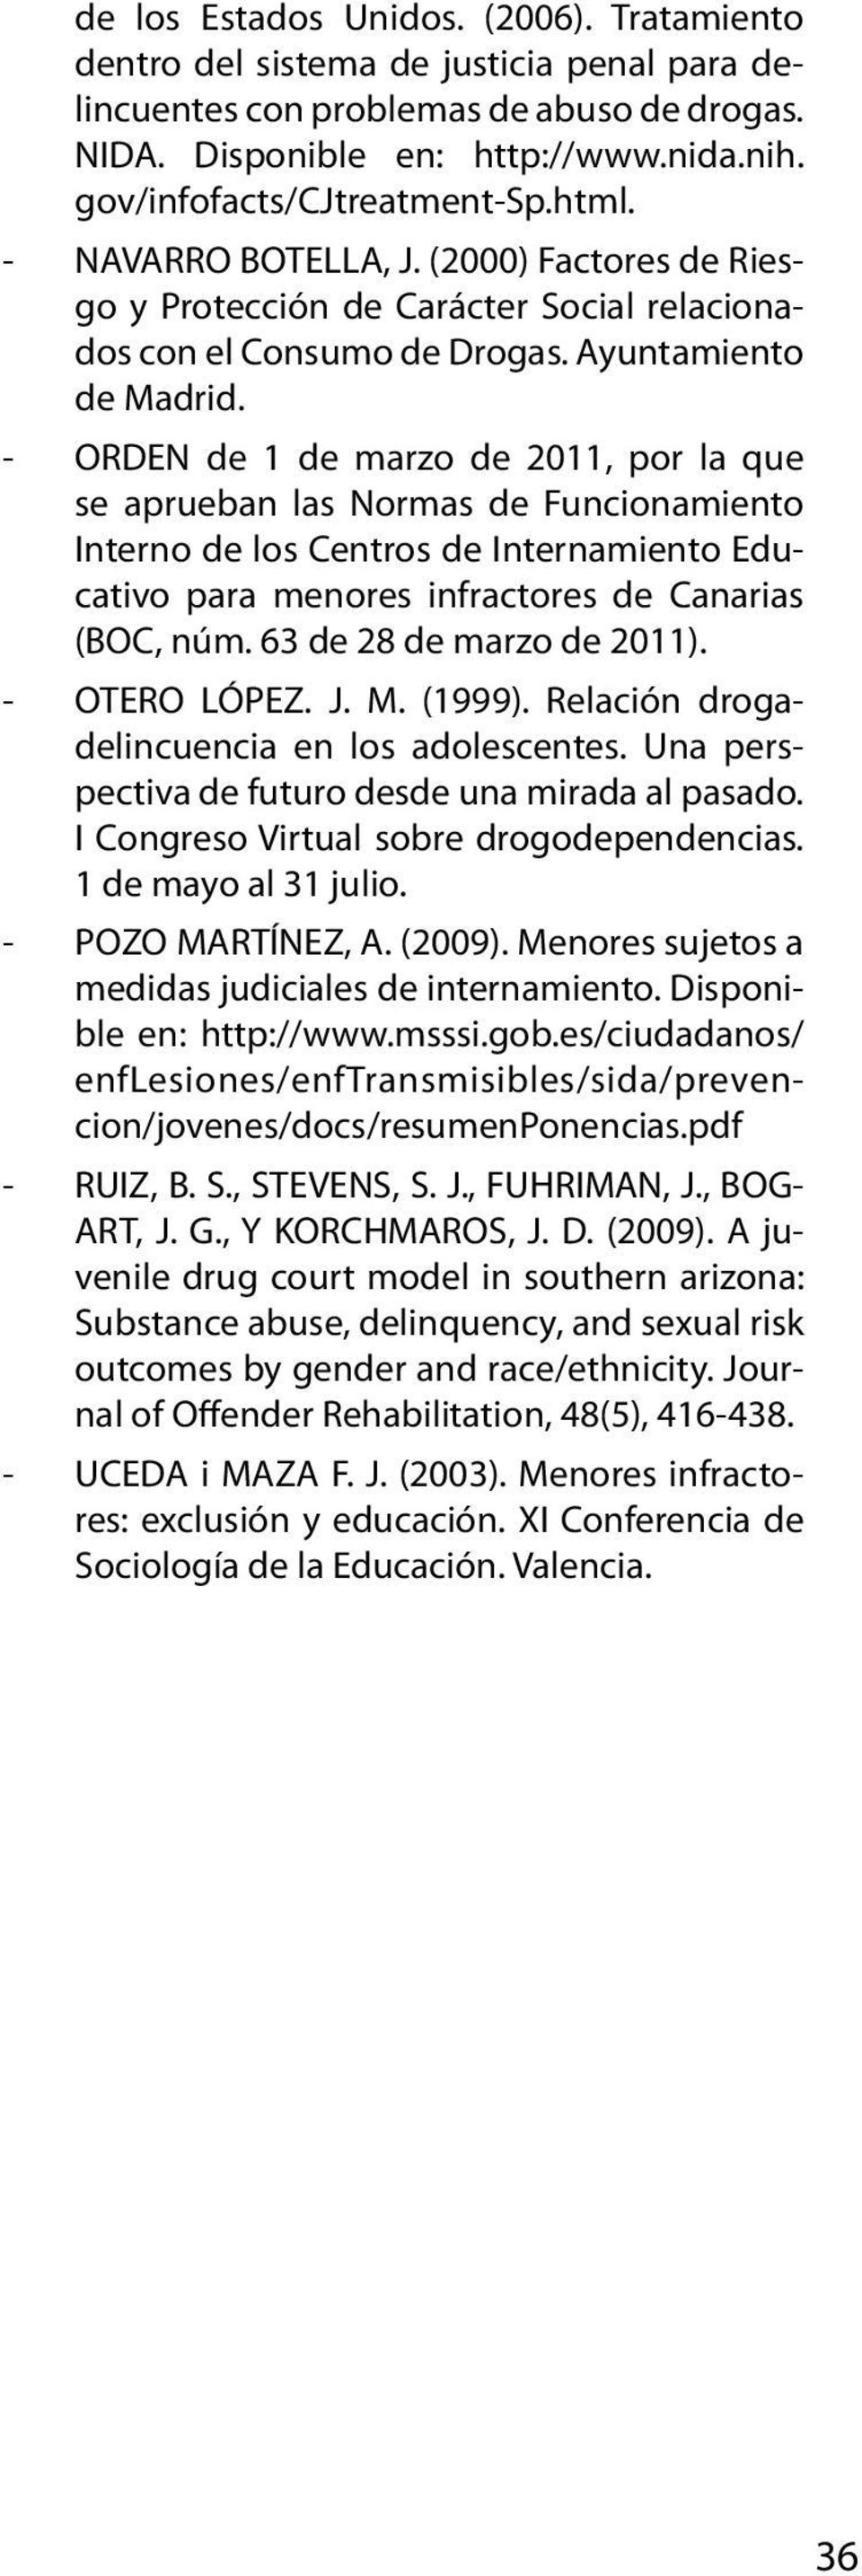 - ORDEN de 1 de marzo de 2011, por la que se aprueban las Normas de Funcionamiento Interno de los Centros de Internamiento Educativo para menores infractores de Canarias (BOC, núm.